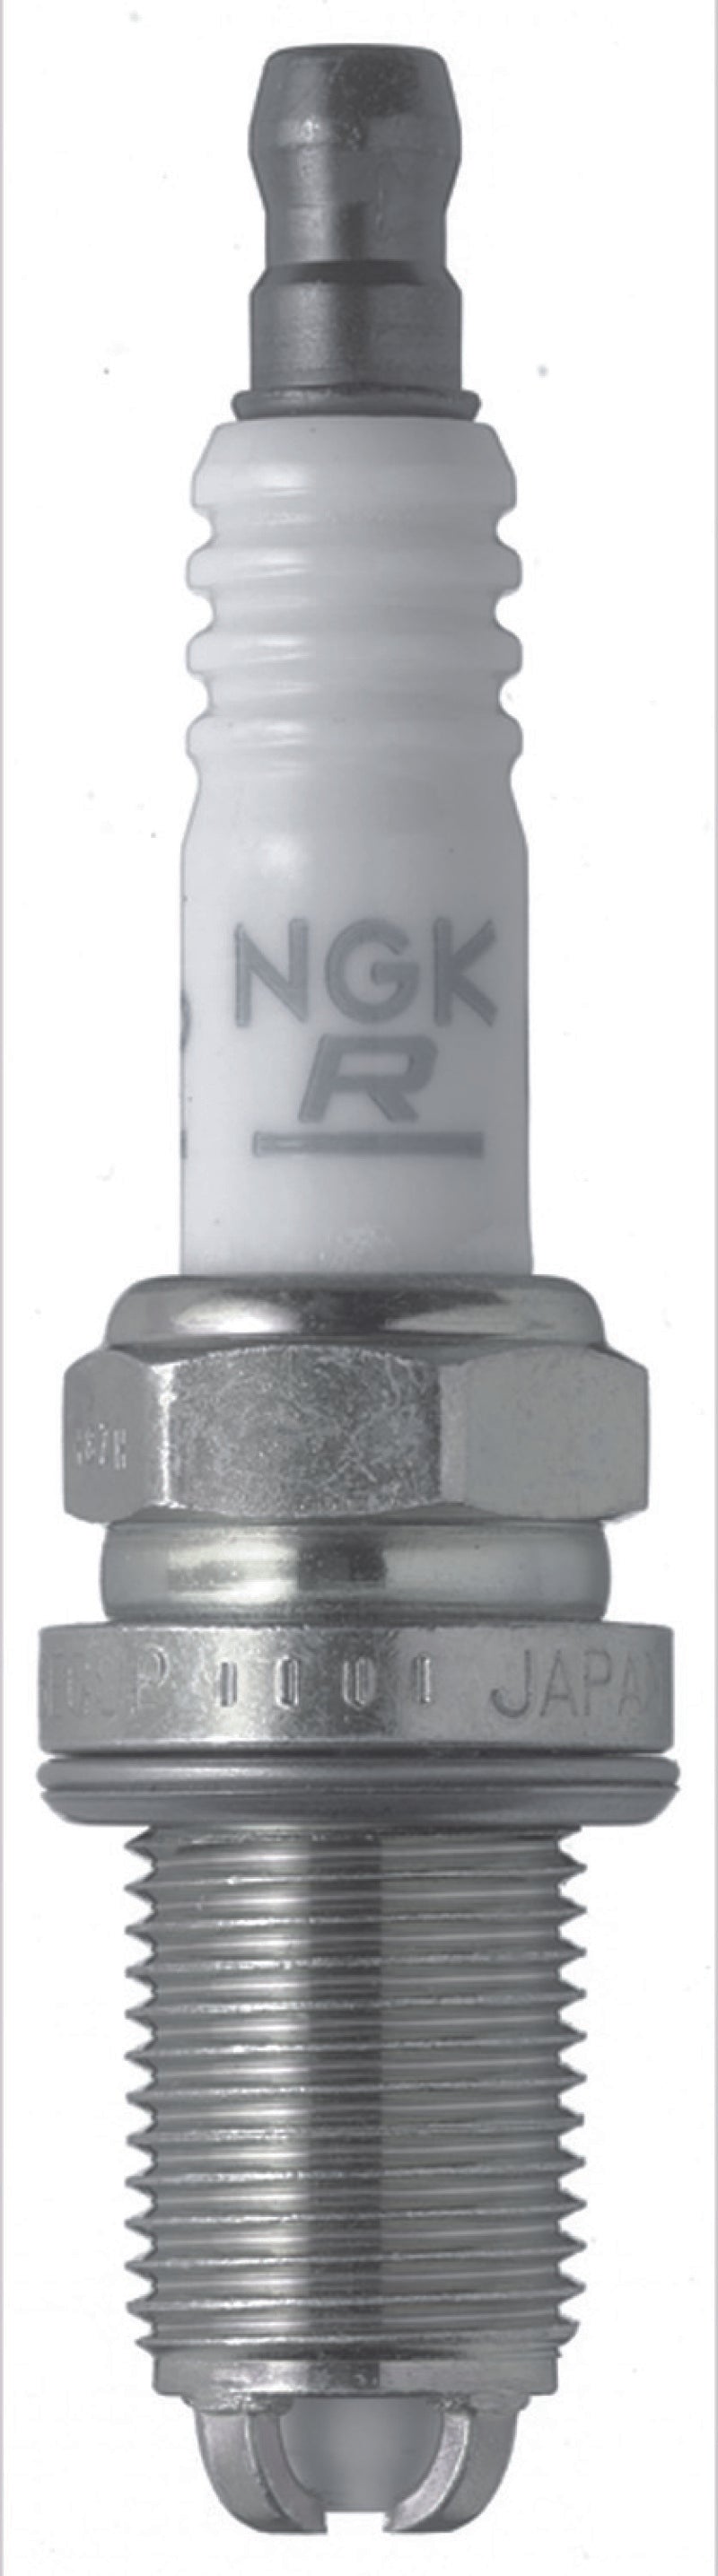 NGK Laser Platinum Spark Plug Box of 4 (BKR7EQUP).